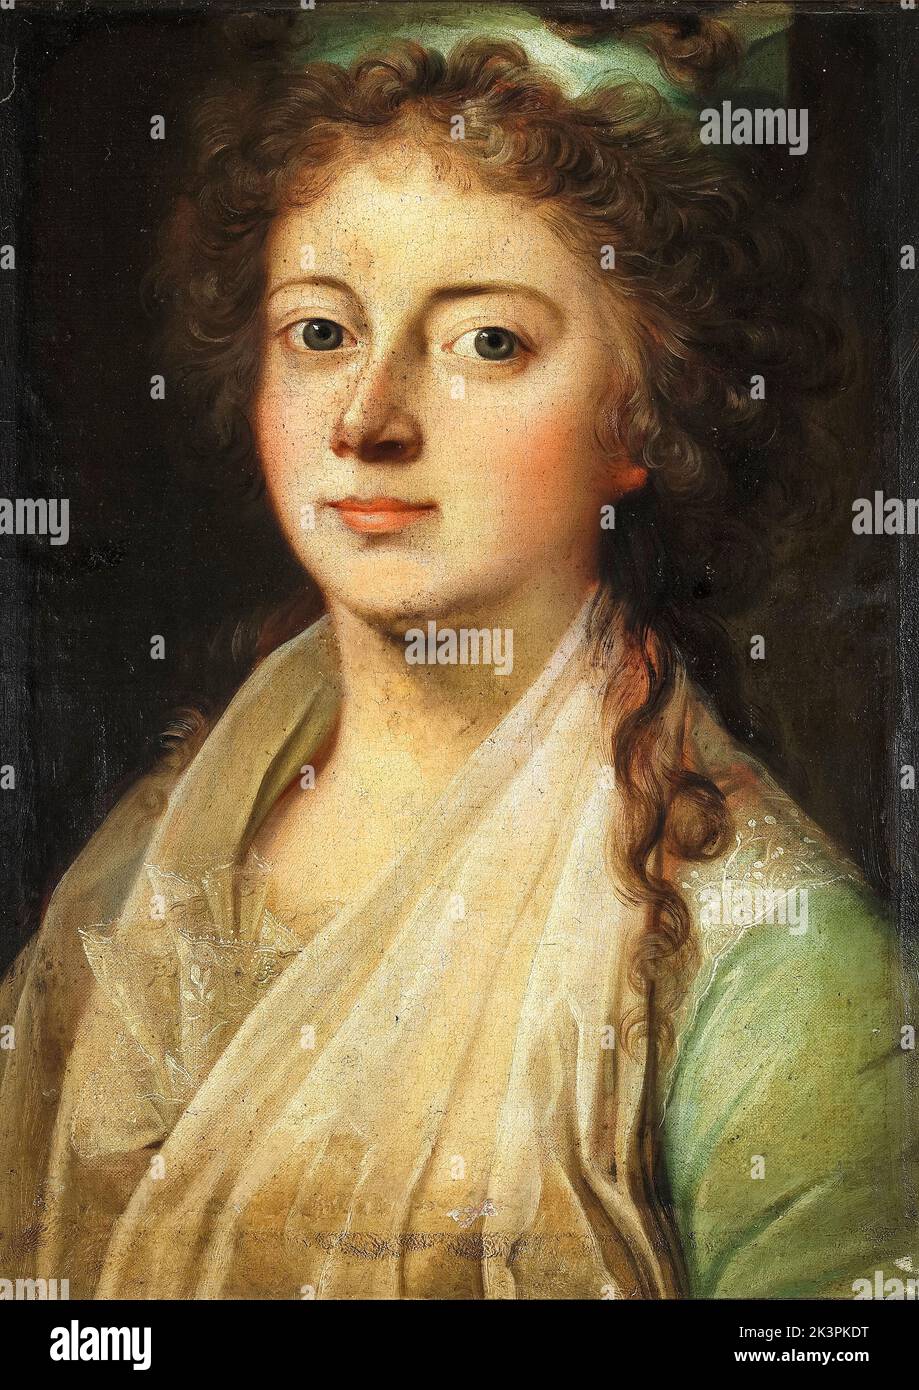 Marie Sophie Frederikke, de Hesse-Kassel (1767-1852), Reine du Danemark et de Norvège, par mariage avec Frederick VI et Regent du Danemark (1814-1815), portrait peint à l'huile sur toile par Jens Juel, 1790-1799 Banque D'Images